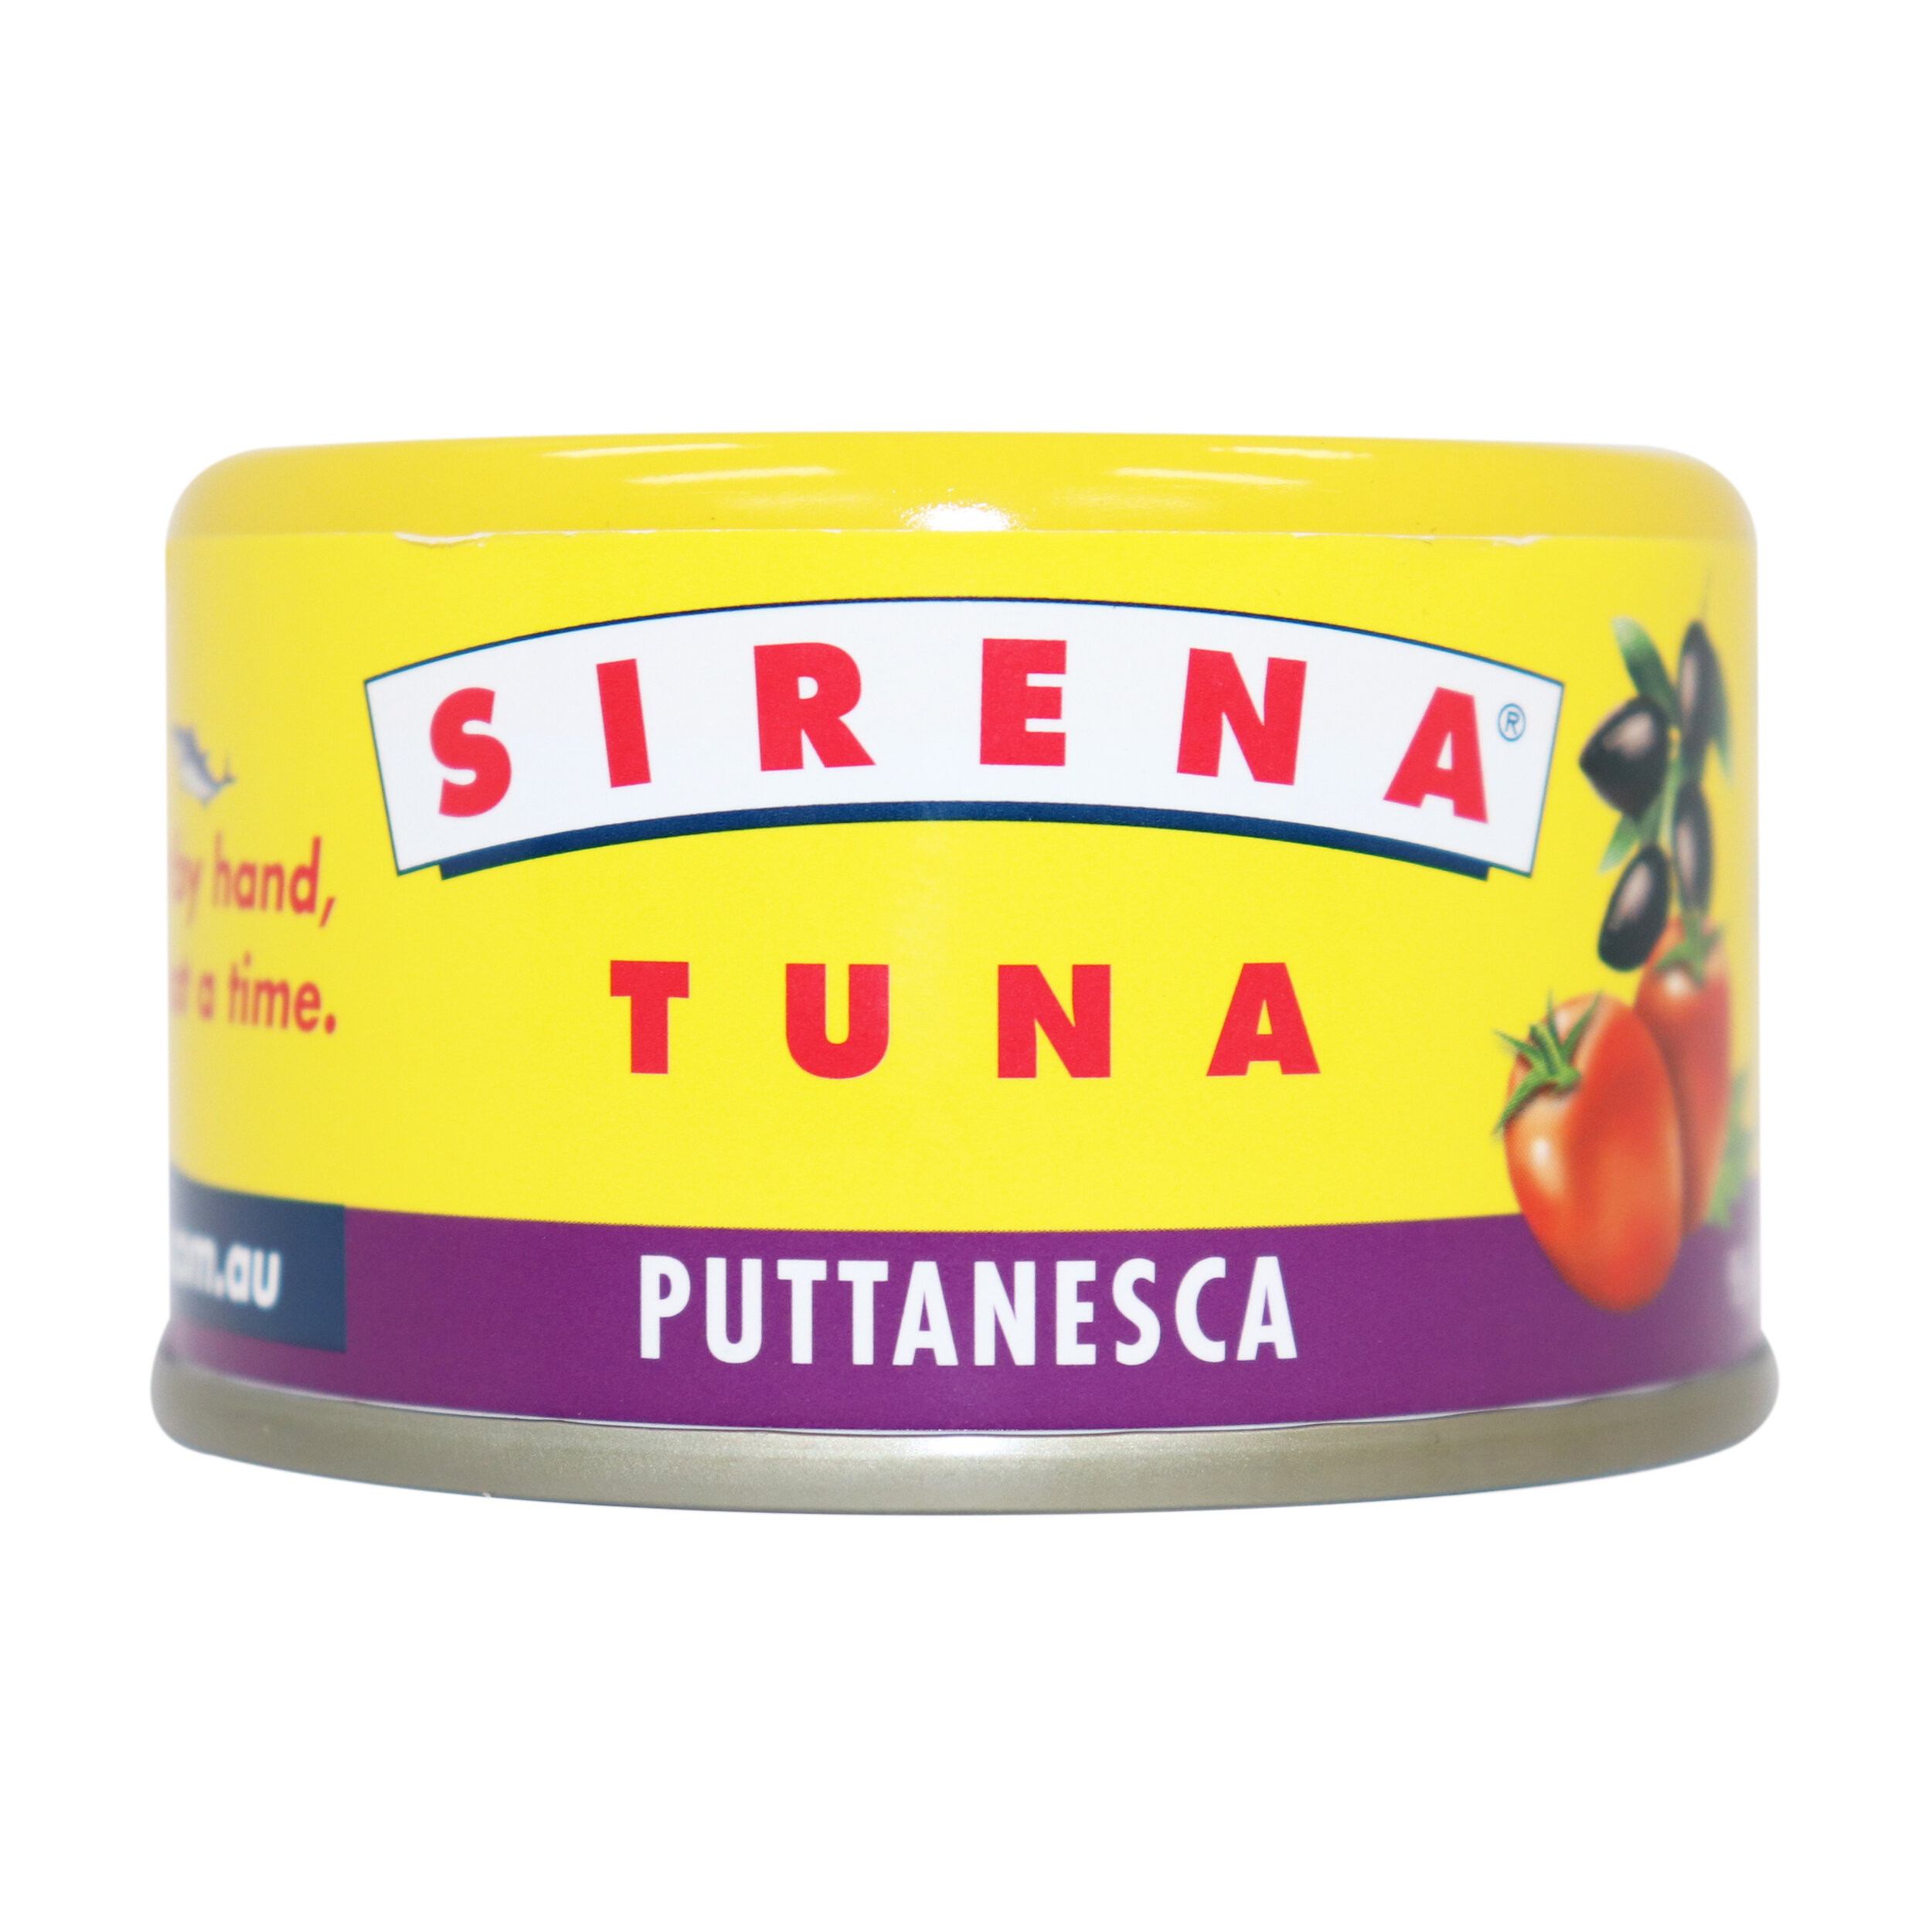 Sirena - SIR0521.jpg